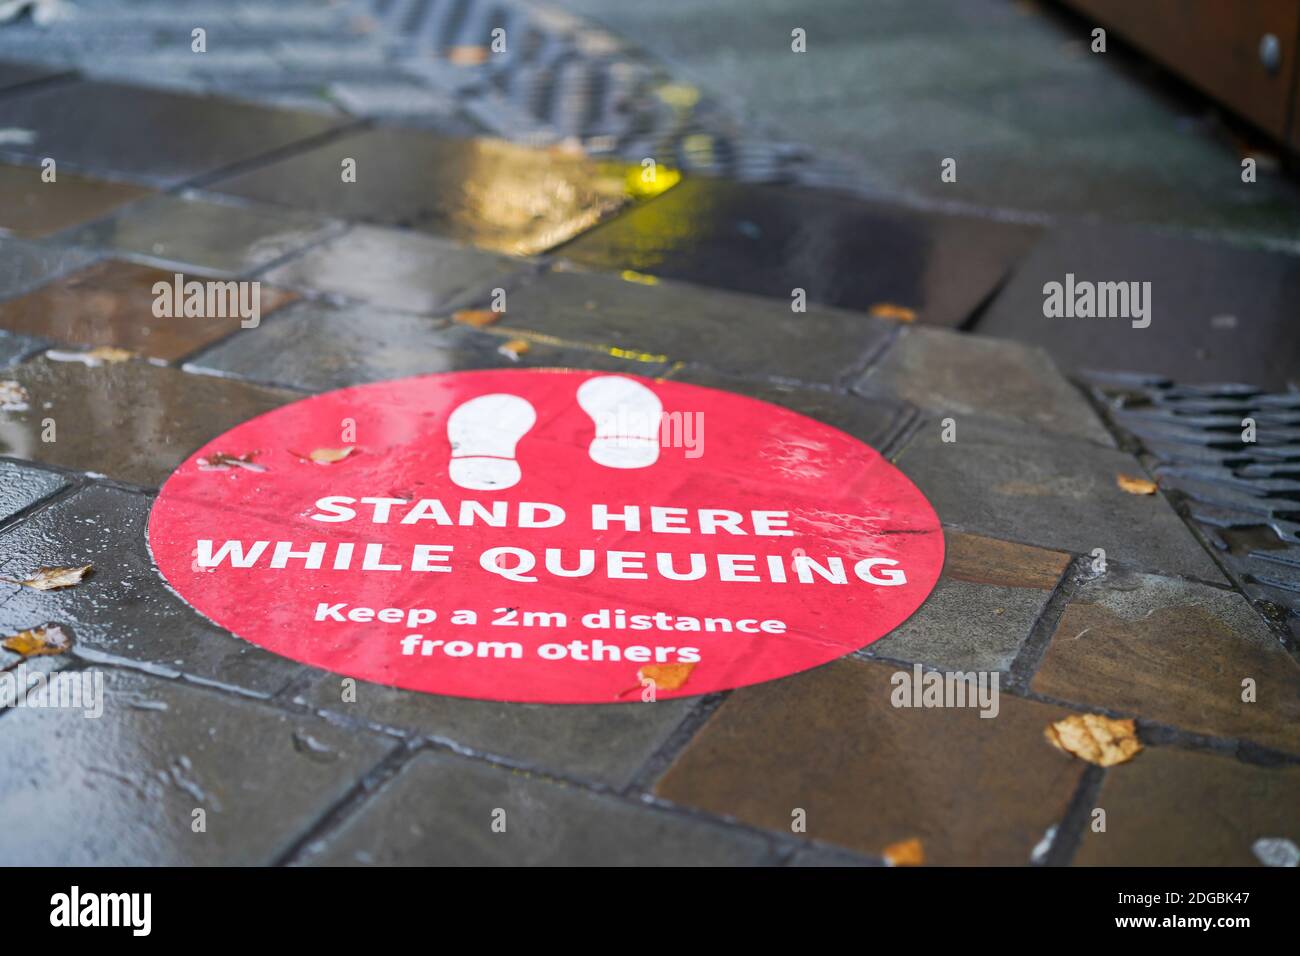 Fußbodenmarkierung für soziale Entfernungen im Stadtzentrum von Großbritannien. Öffentlicher Ratschlag, bei einer Coronavirus-Pandemie einen Abstand von 2m m zu anderen Personen einzuhalten. Stockfoto